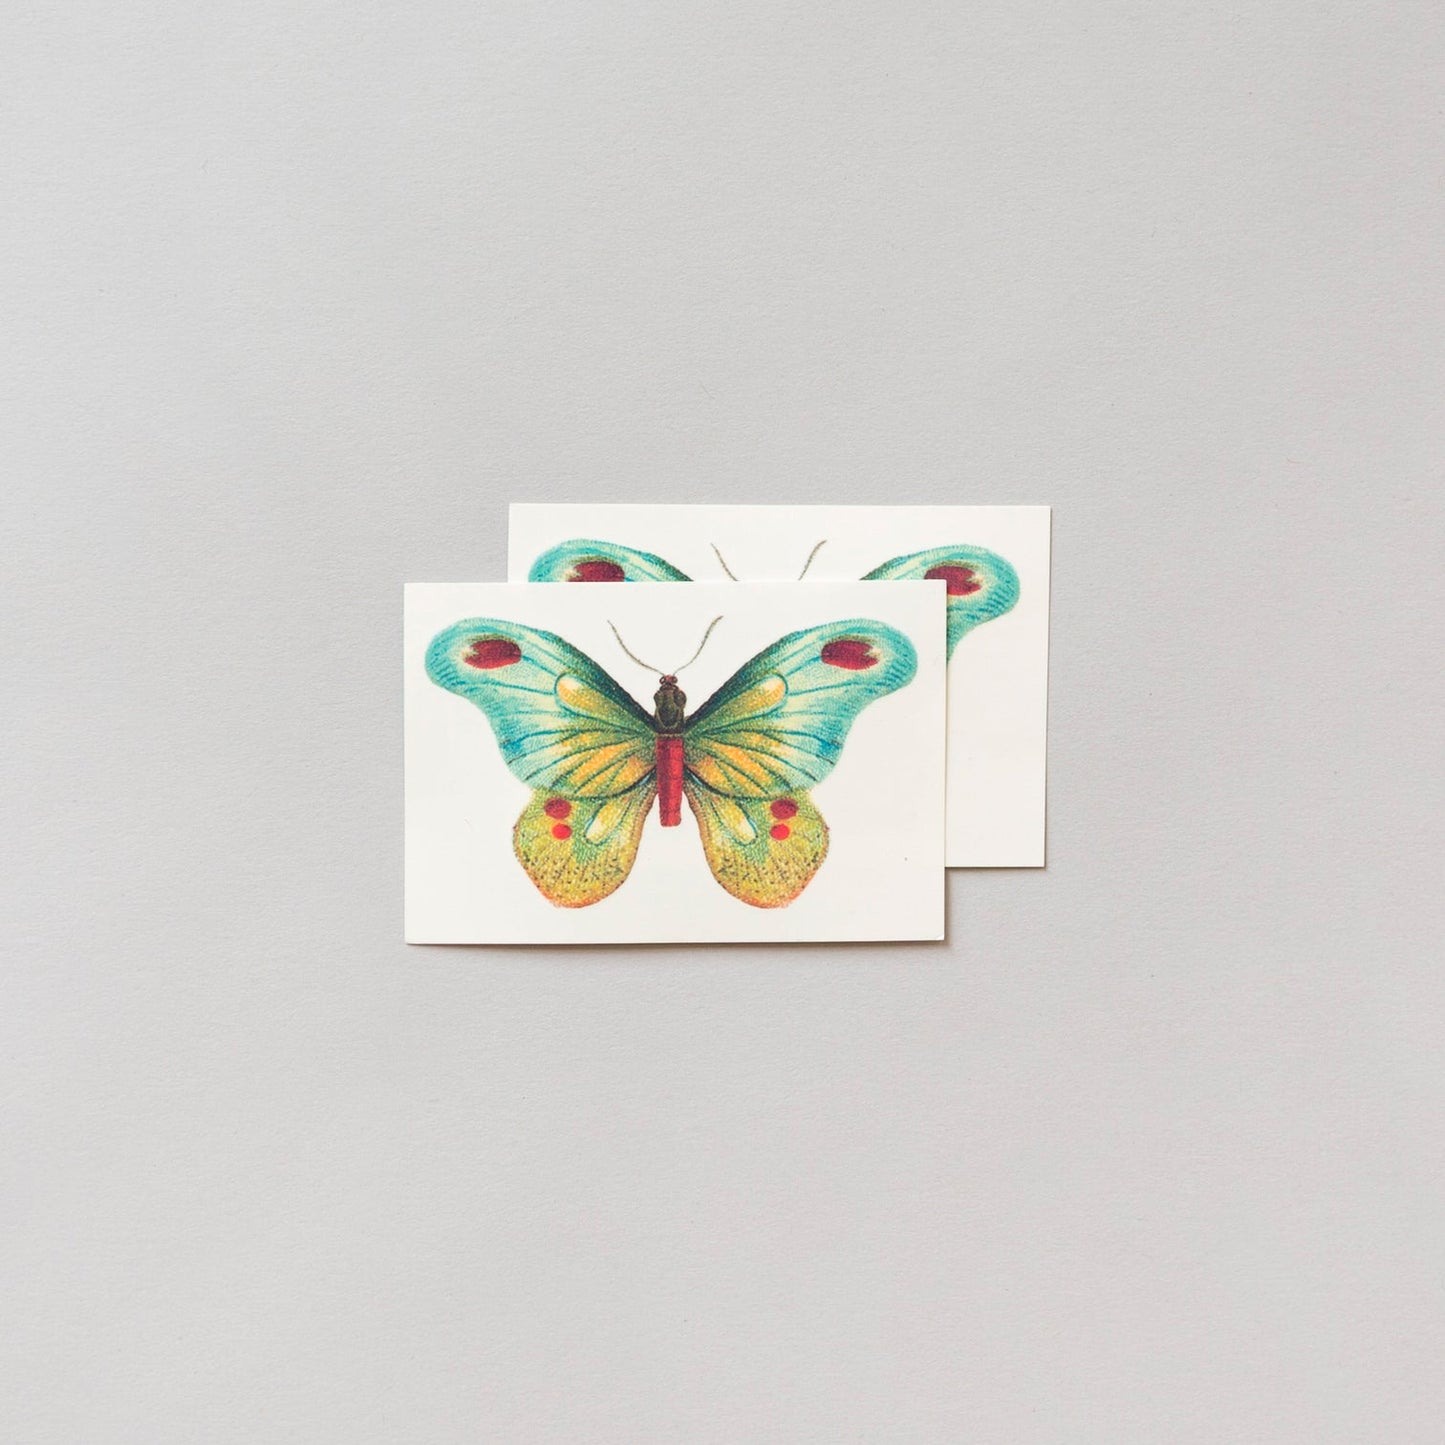 Schmetterling #1 Temporäre Tattoos